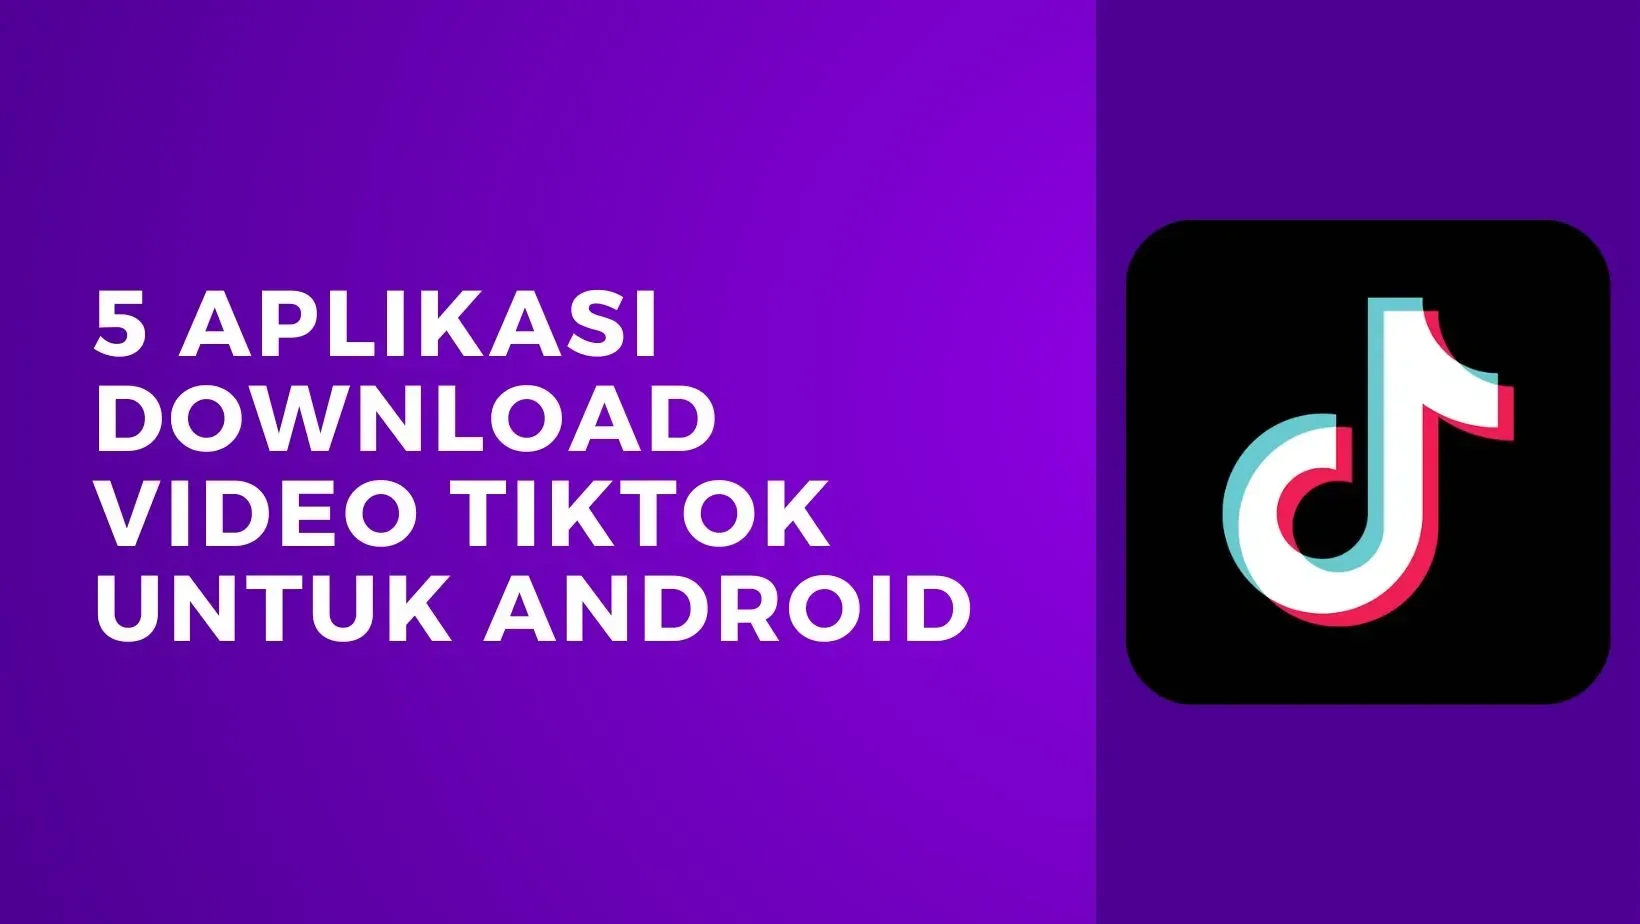 5 Aplikasi Download Video TikTok Untuk Android